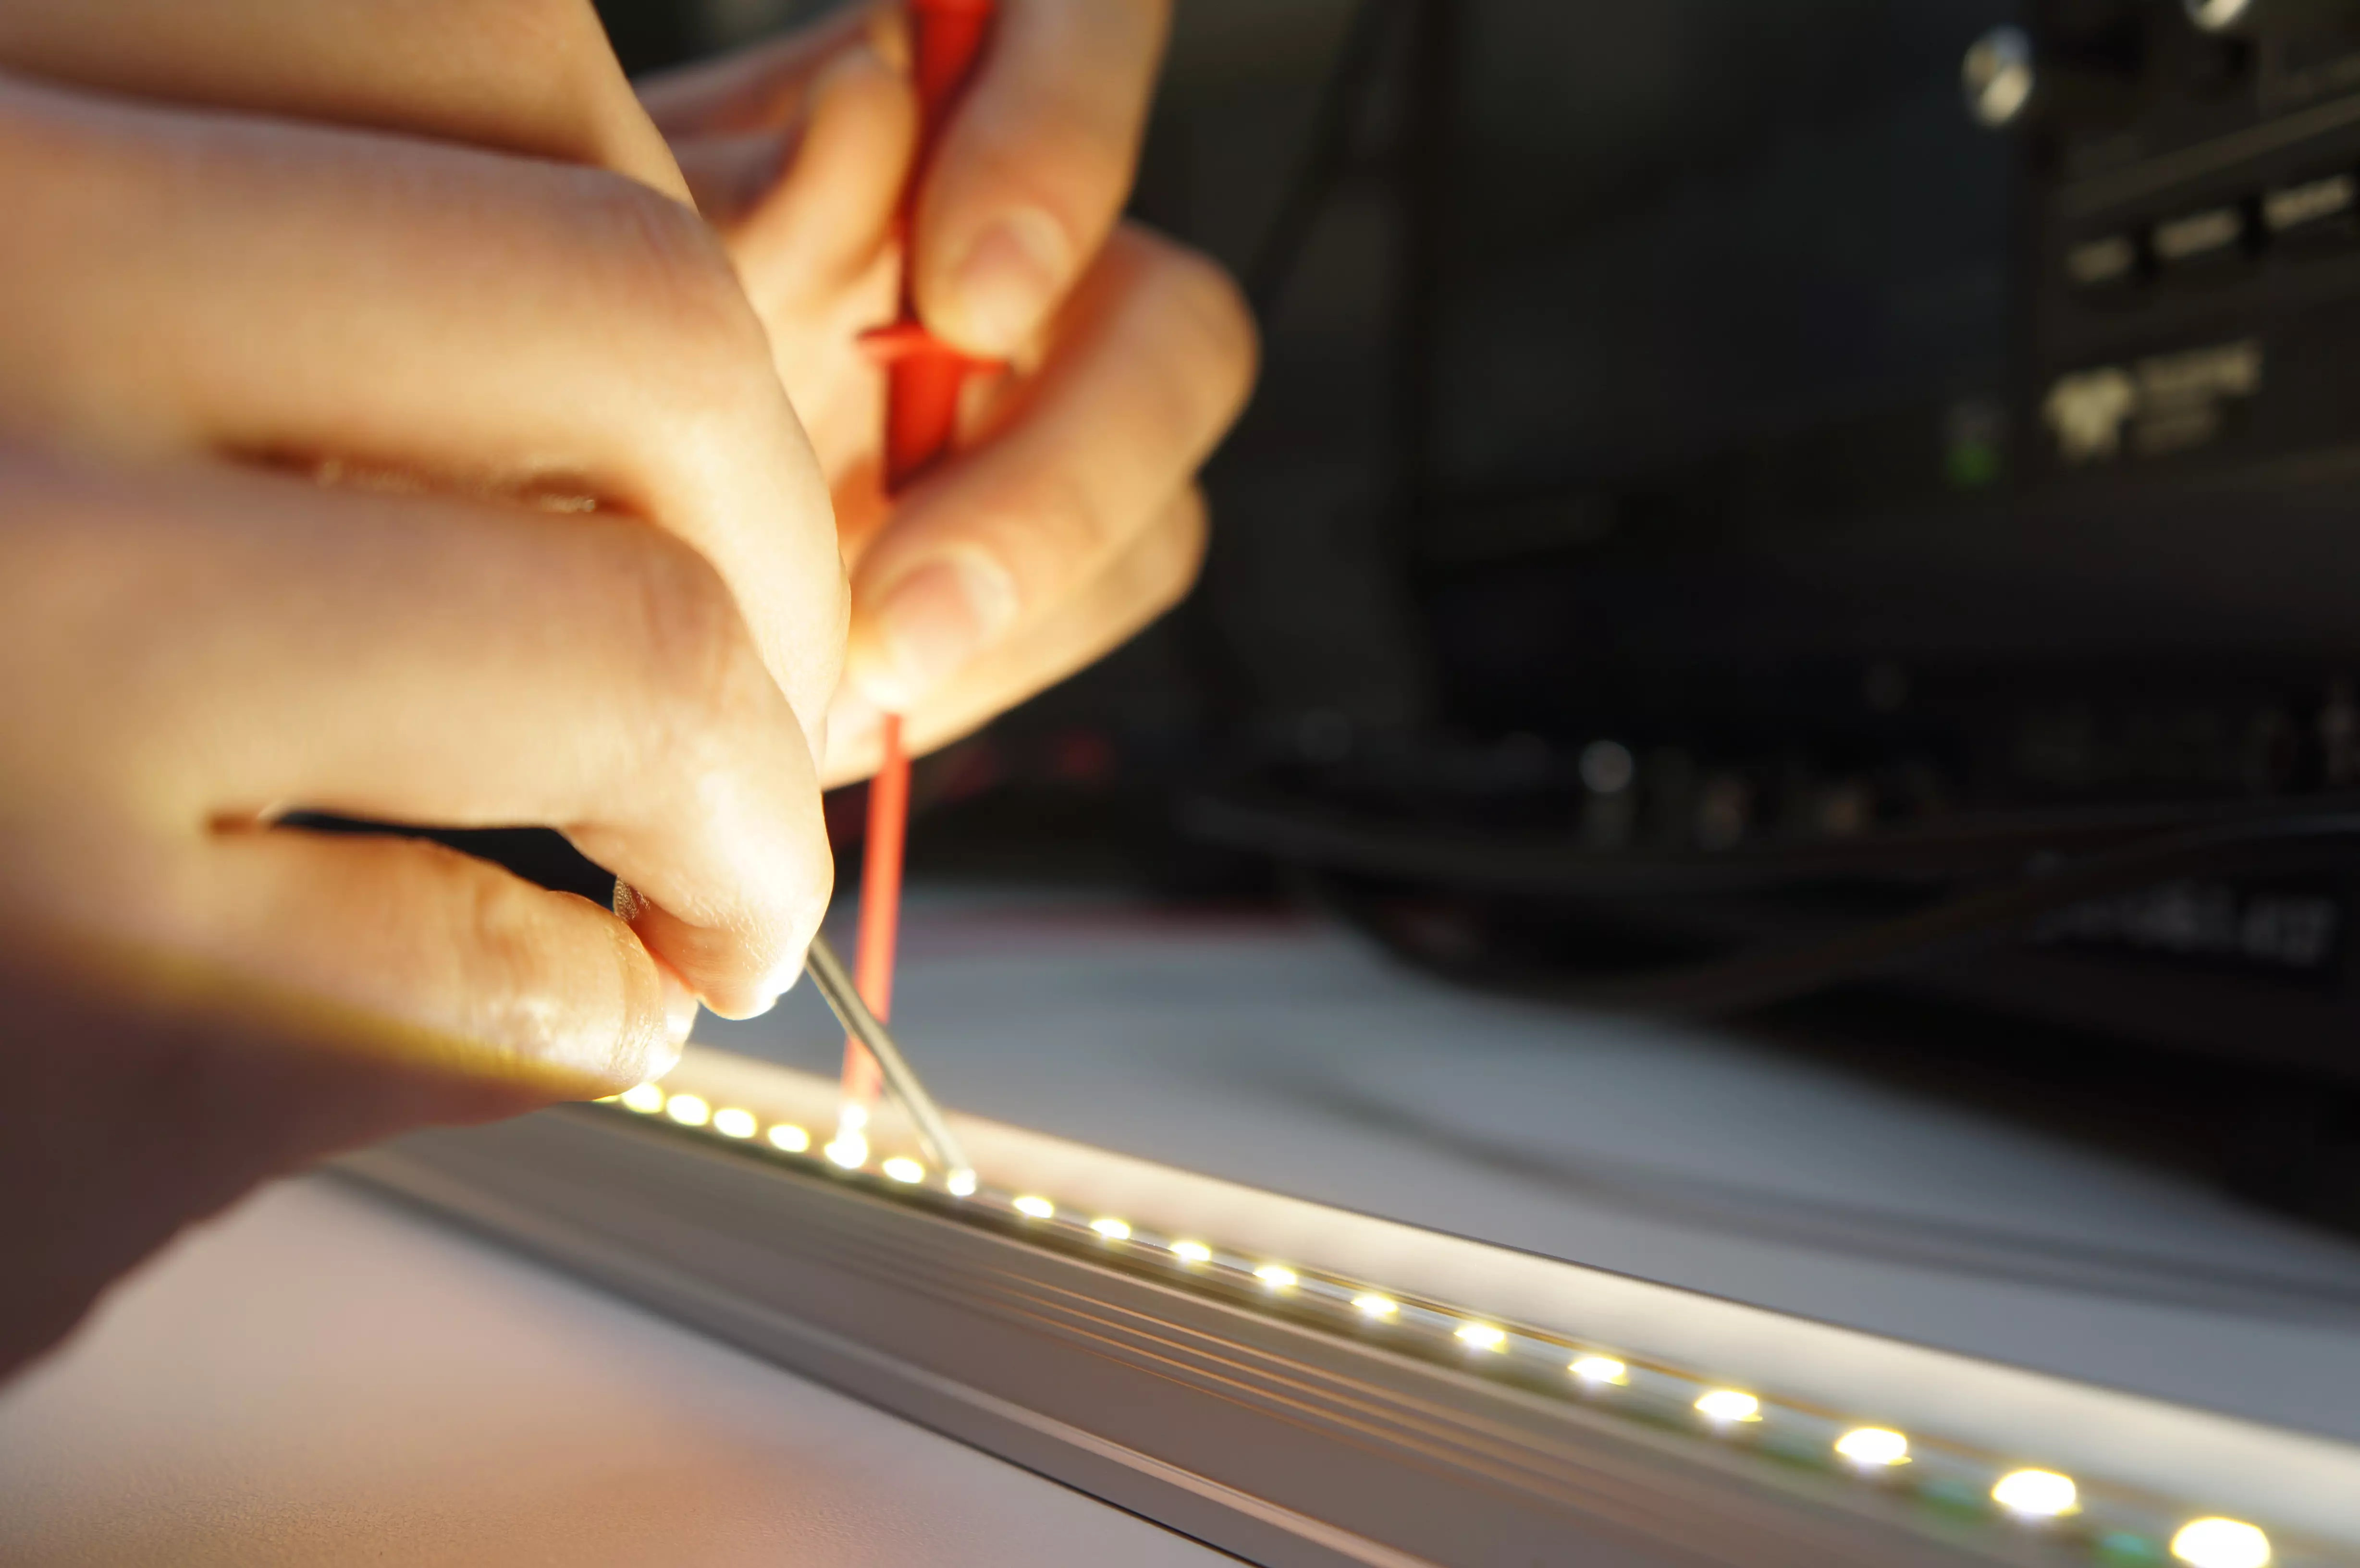 Messungen haben ergeben, dass sich mit der interaktiven LED-Röhre gegenüber einer herkömmlichen Beleuchtung bis zu 90 Prozent Strom einsparen lassen.